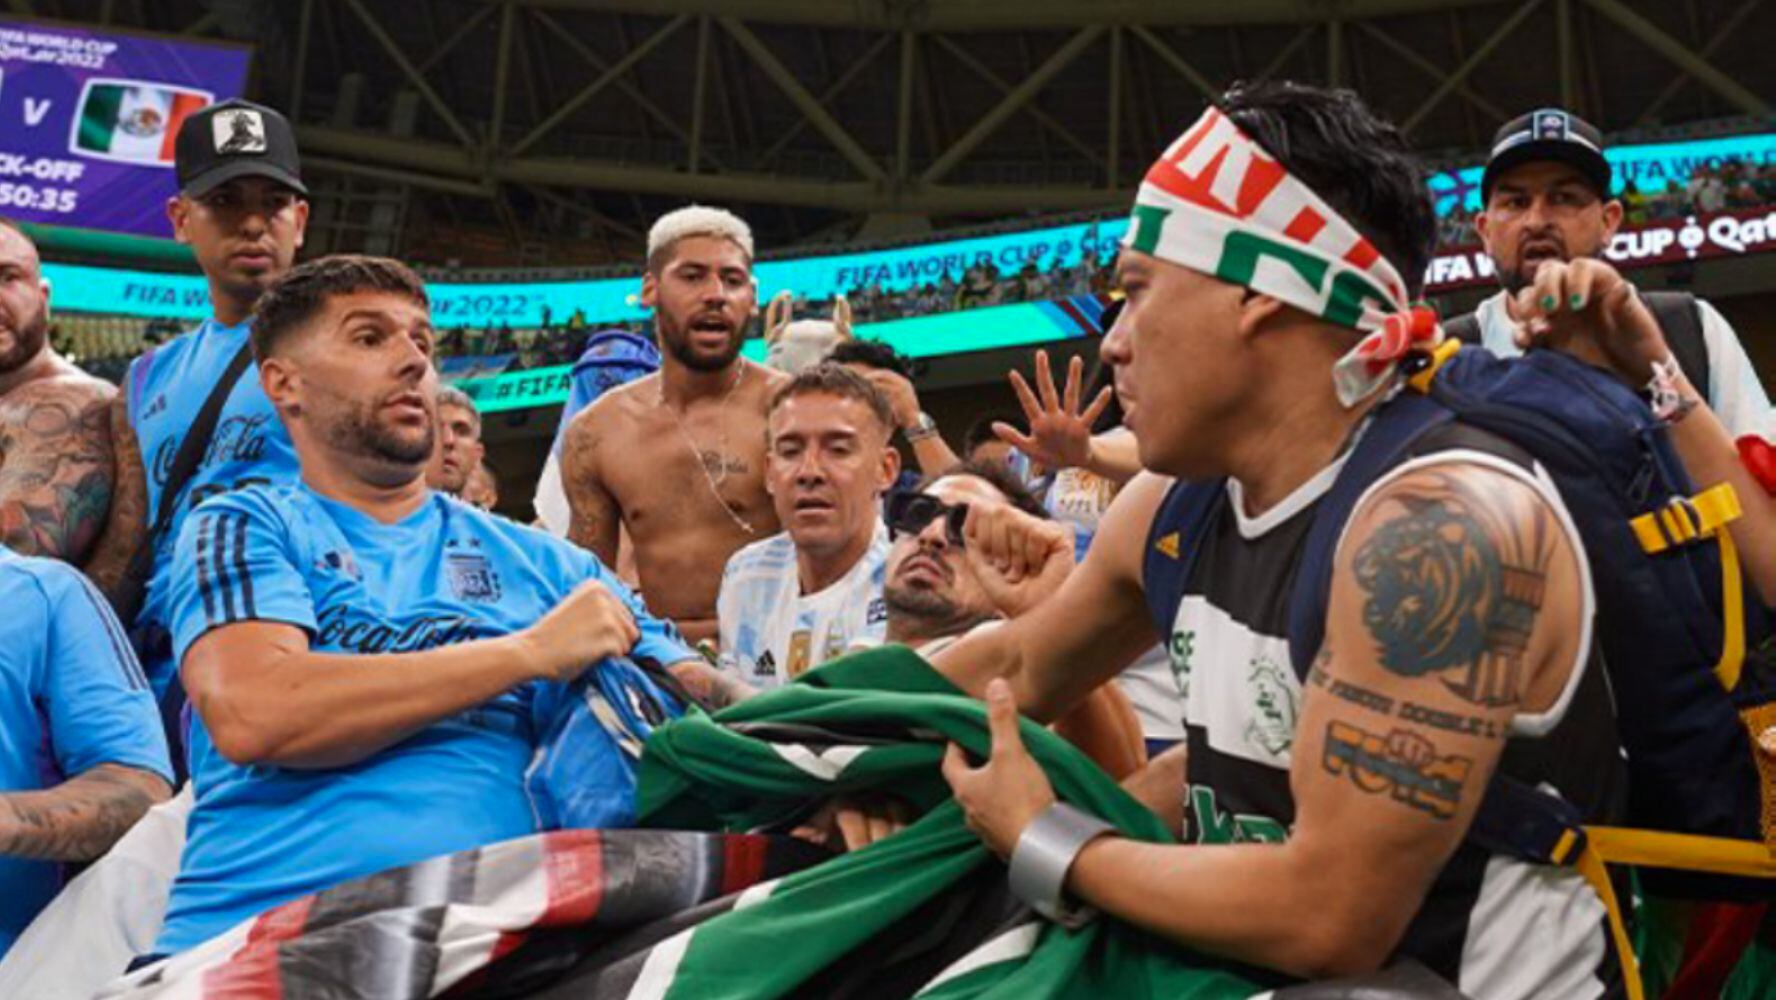 México vs. Argentina: Afición de ambas selecciones ‘calientan los ánimos’ previo al partido